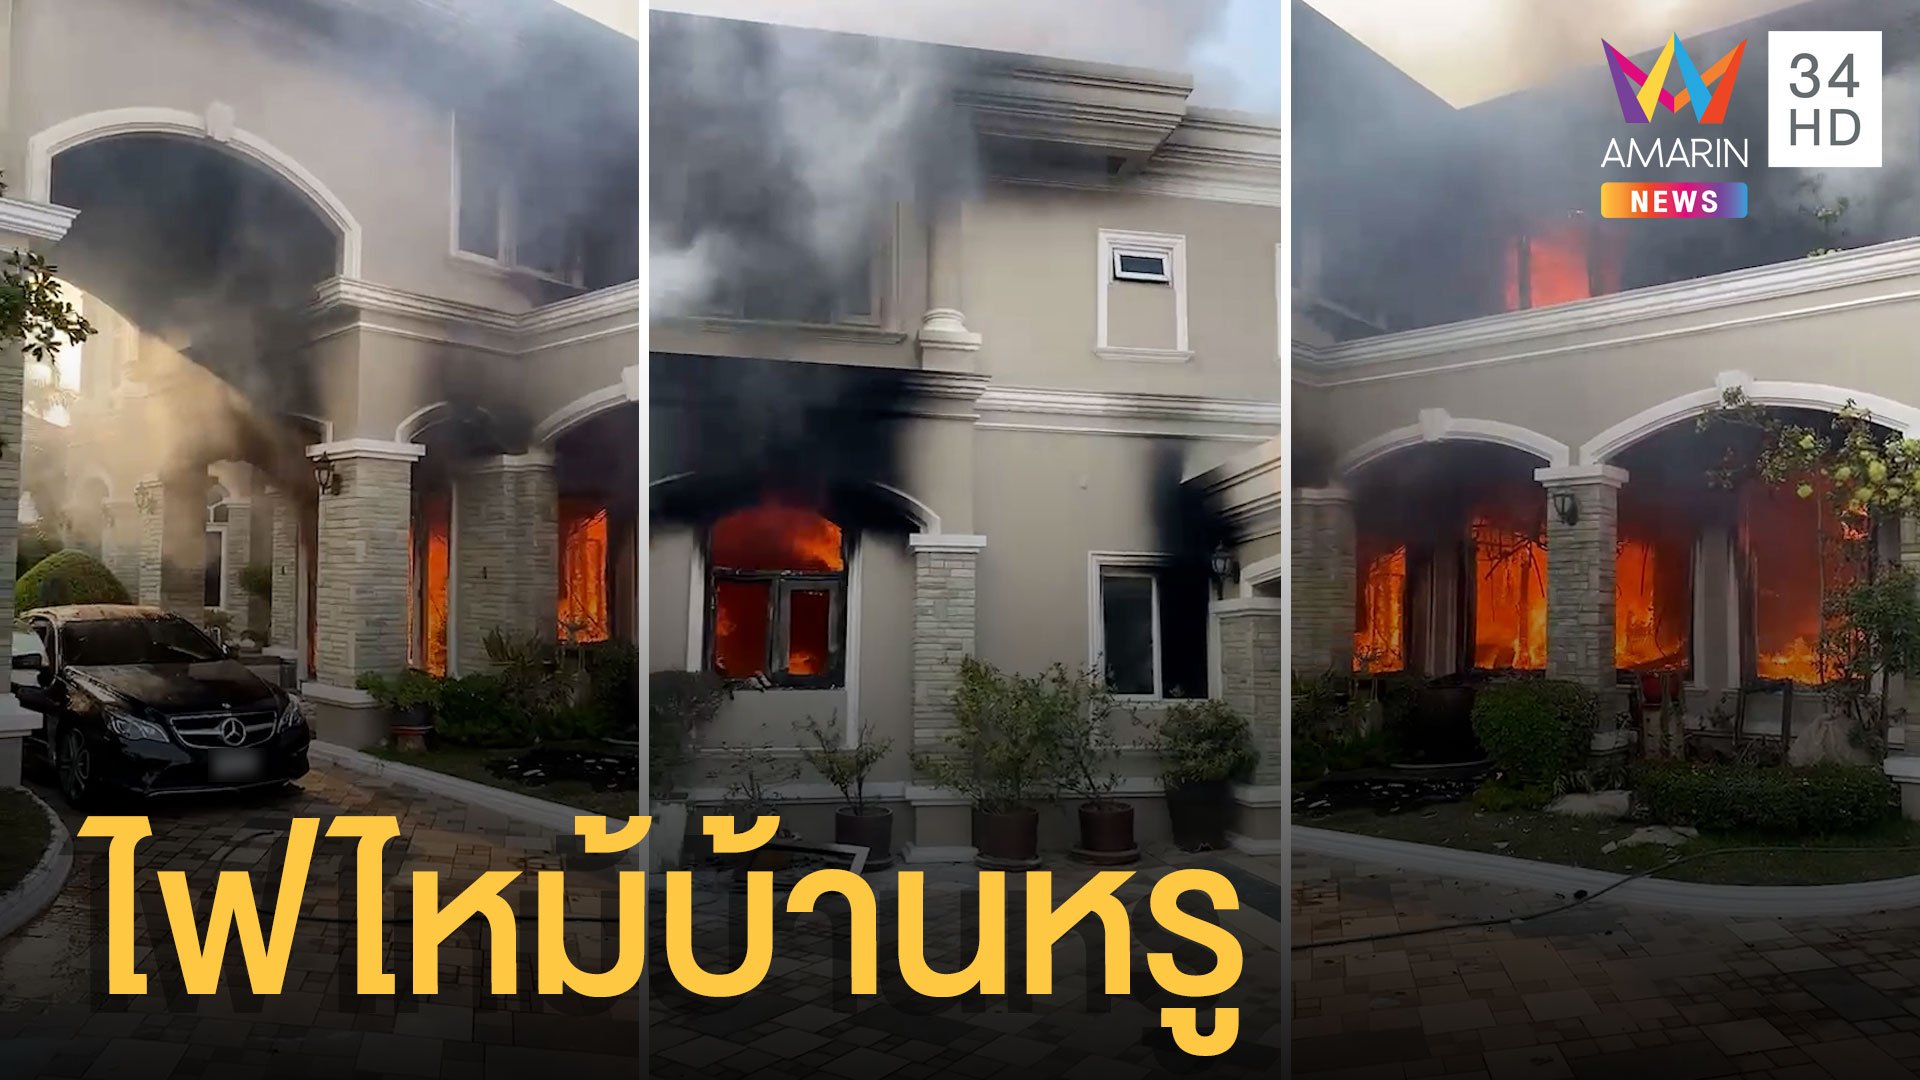 ไฟไหม้บ้านหรูย่านสุขาภิบาล เสียหาย 50 ล้าน | ข่าวอรุณอมรินทร์ | 19 มี.ค. 64 | AMARIN TVHD34